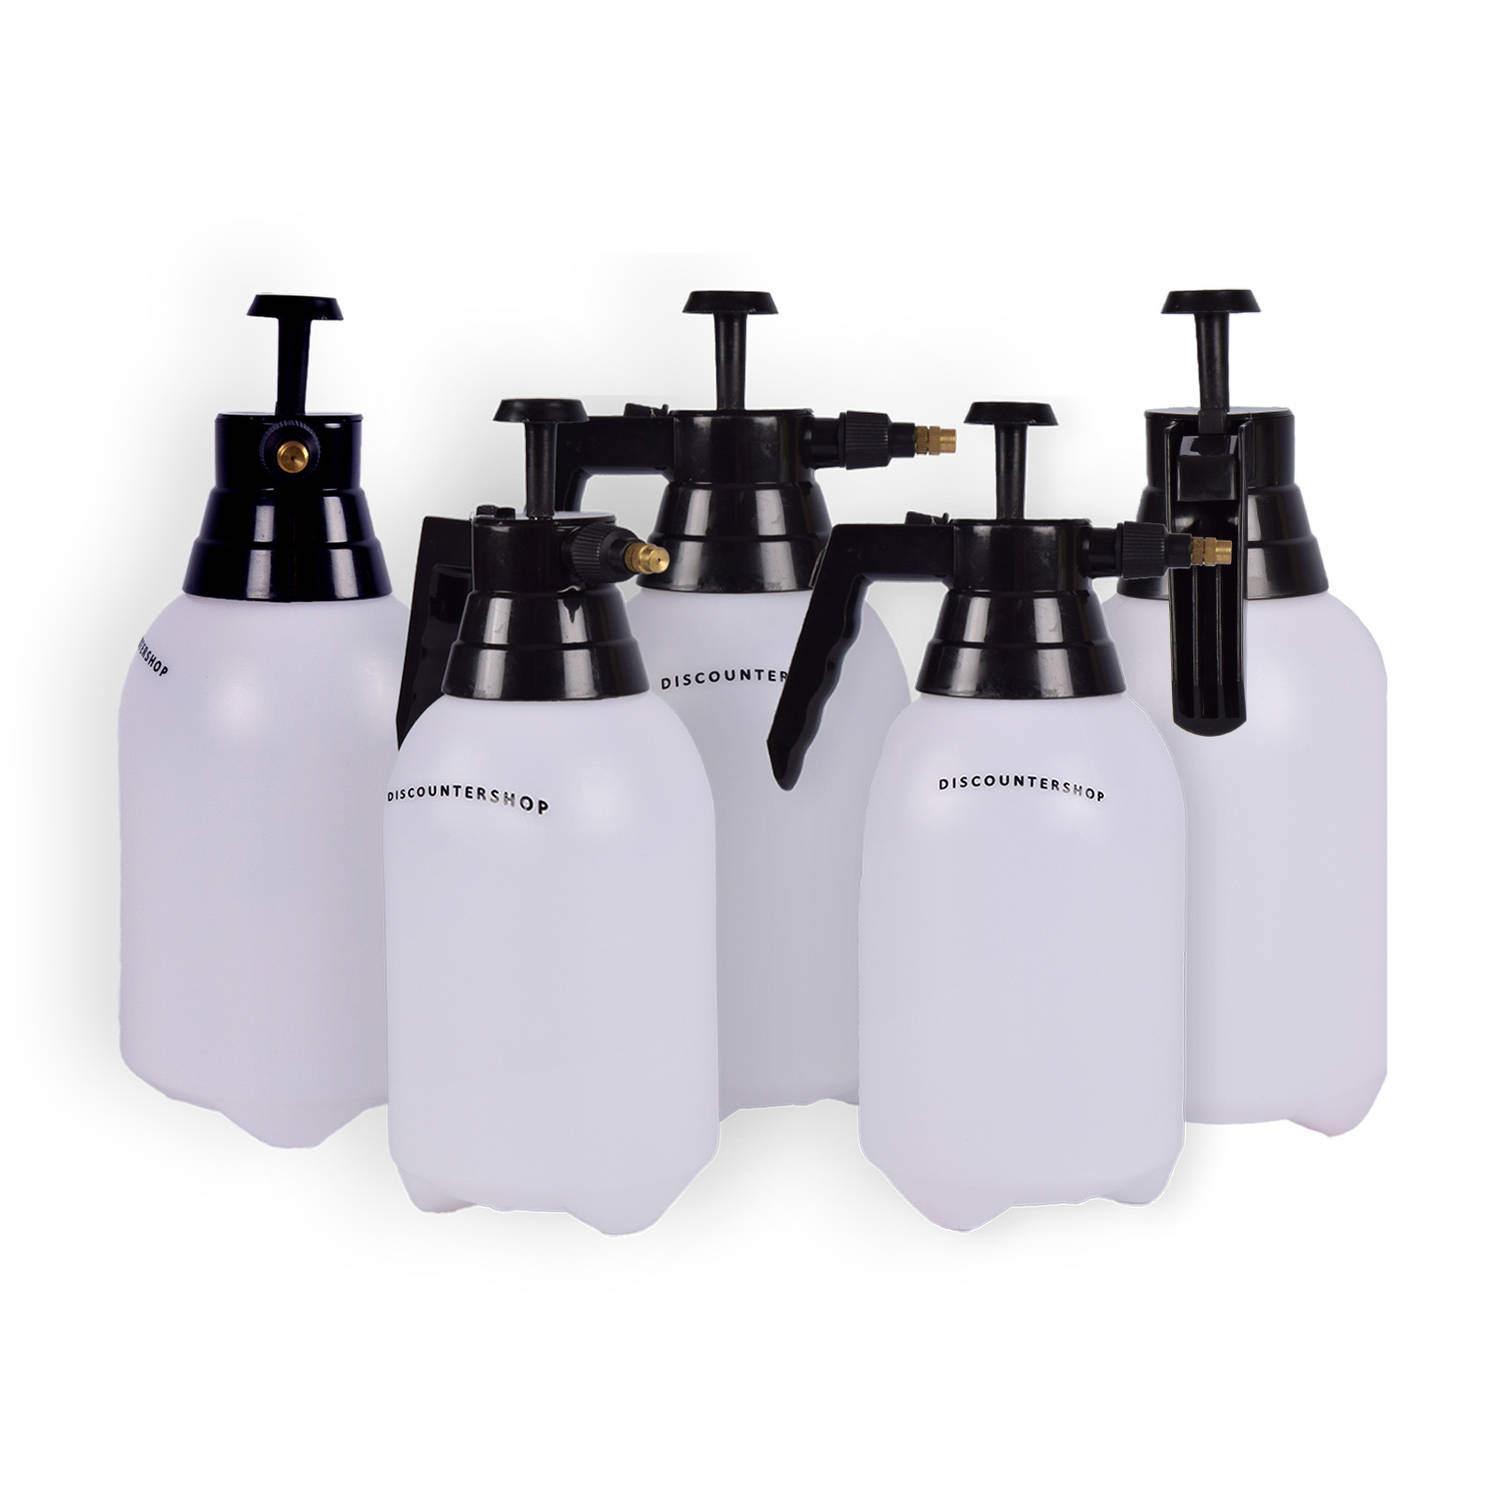 Complete Set van 5 Handige Druksproeiers 1,5 Liter elk - Tuinwatersproeiers en Onkruidverdelgers - Wit & Zwart Plastic - 31cm x 11cm - Bar 2-2,5